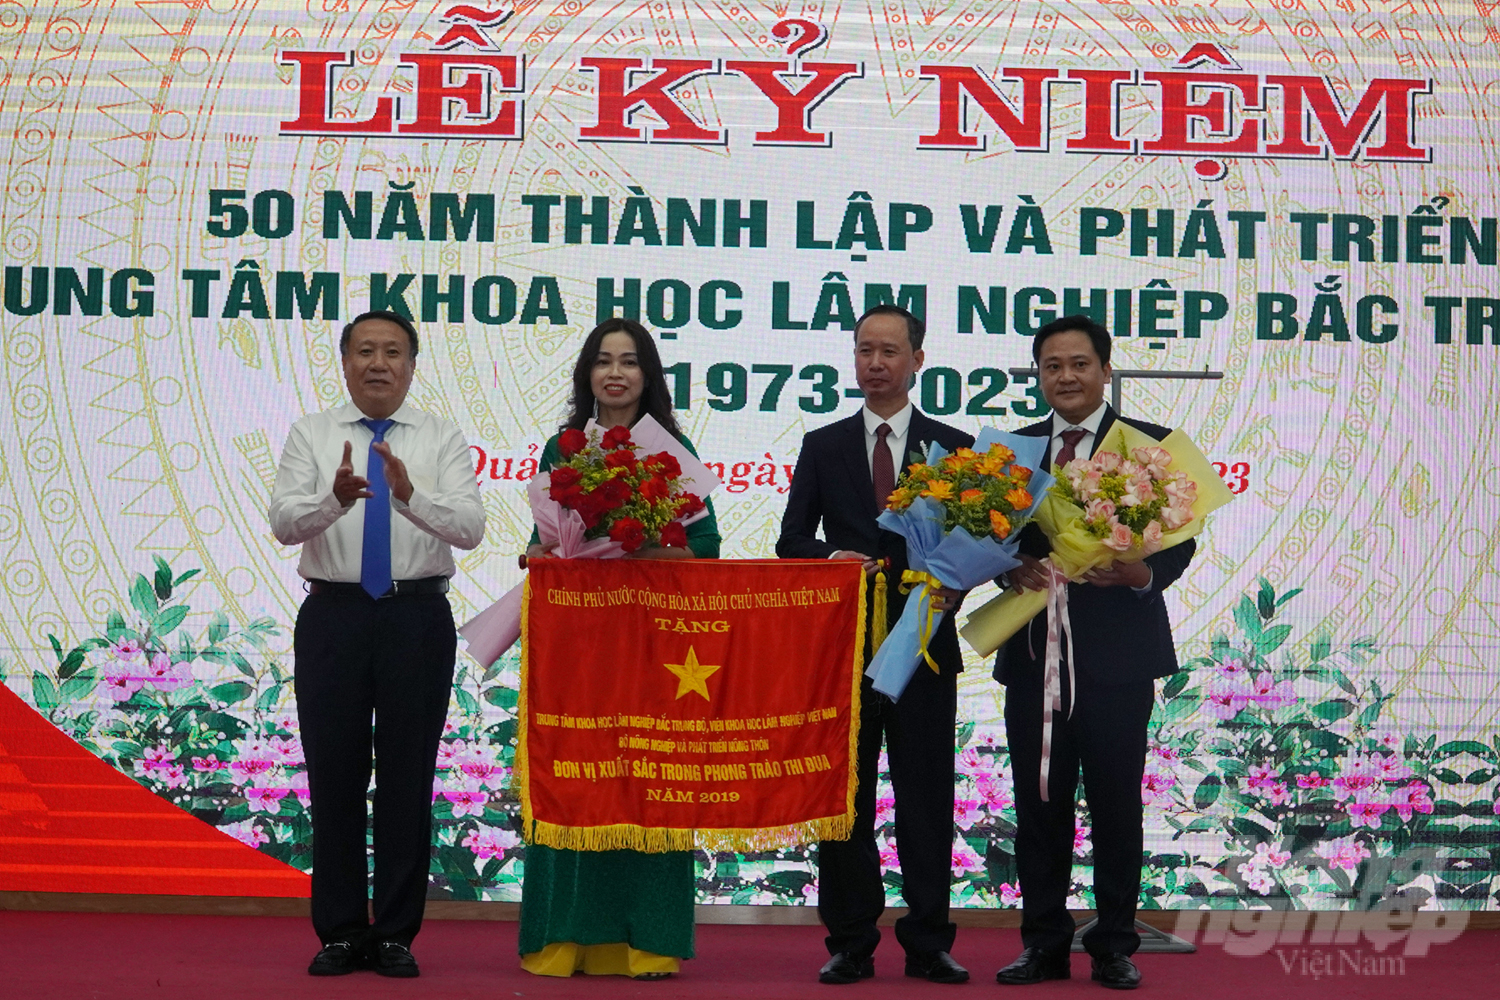 Trung tâm Khoa học lâm nghiệp Bắc Trung bộ vinh dự nhận Cờ thi đua của Thủ tướng Chính phủ, Bộ trưởng Bộ NN-PTNT và UBND tỉnh Quảng Trị. Ảnh: Võ Dũng.